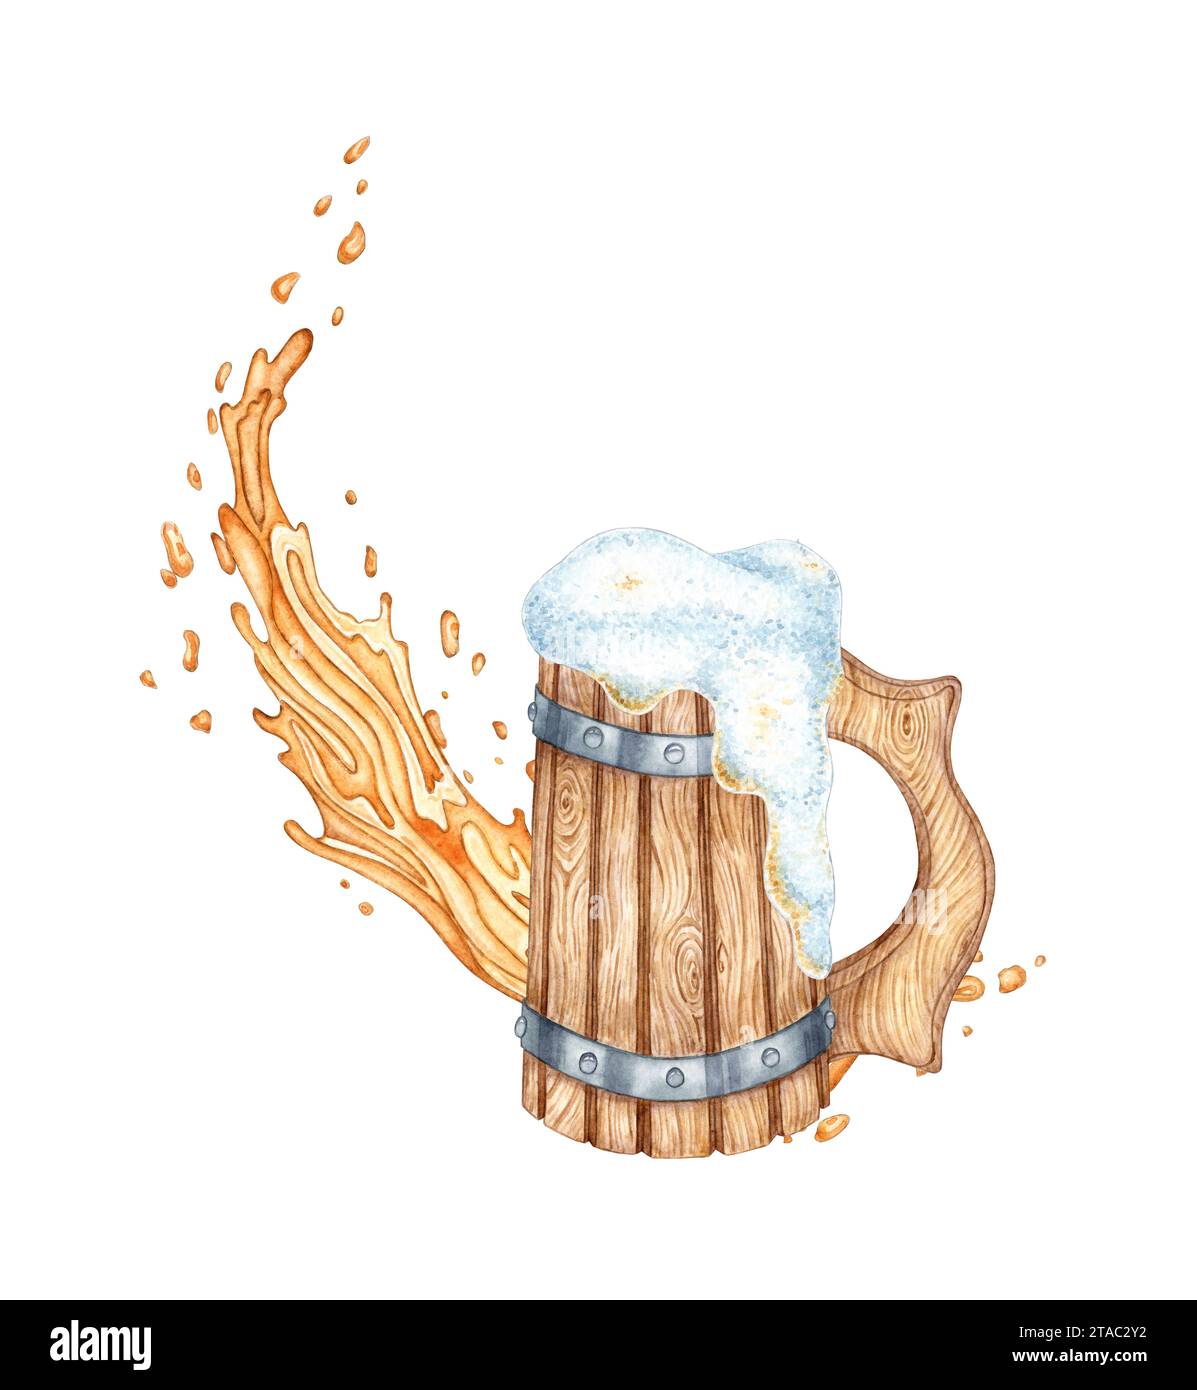 Illustration à l'aquarelle d'une vieille tasse en bois avec de la mousse de bière et des éclaboussures. Tasse vintage pour la bière ou le vin. Festival Oktoberfest isolé. Compositions FO Banque D'Images